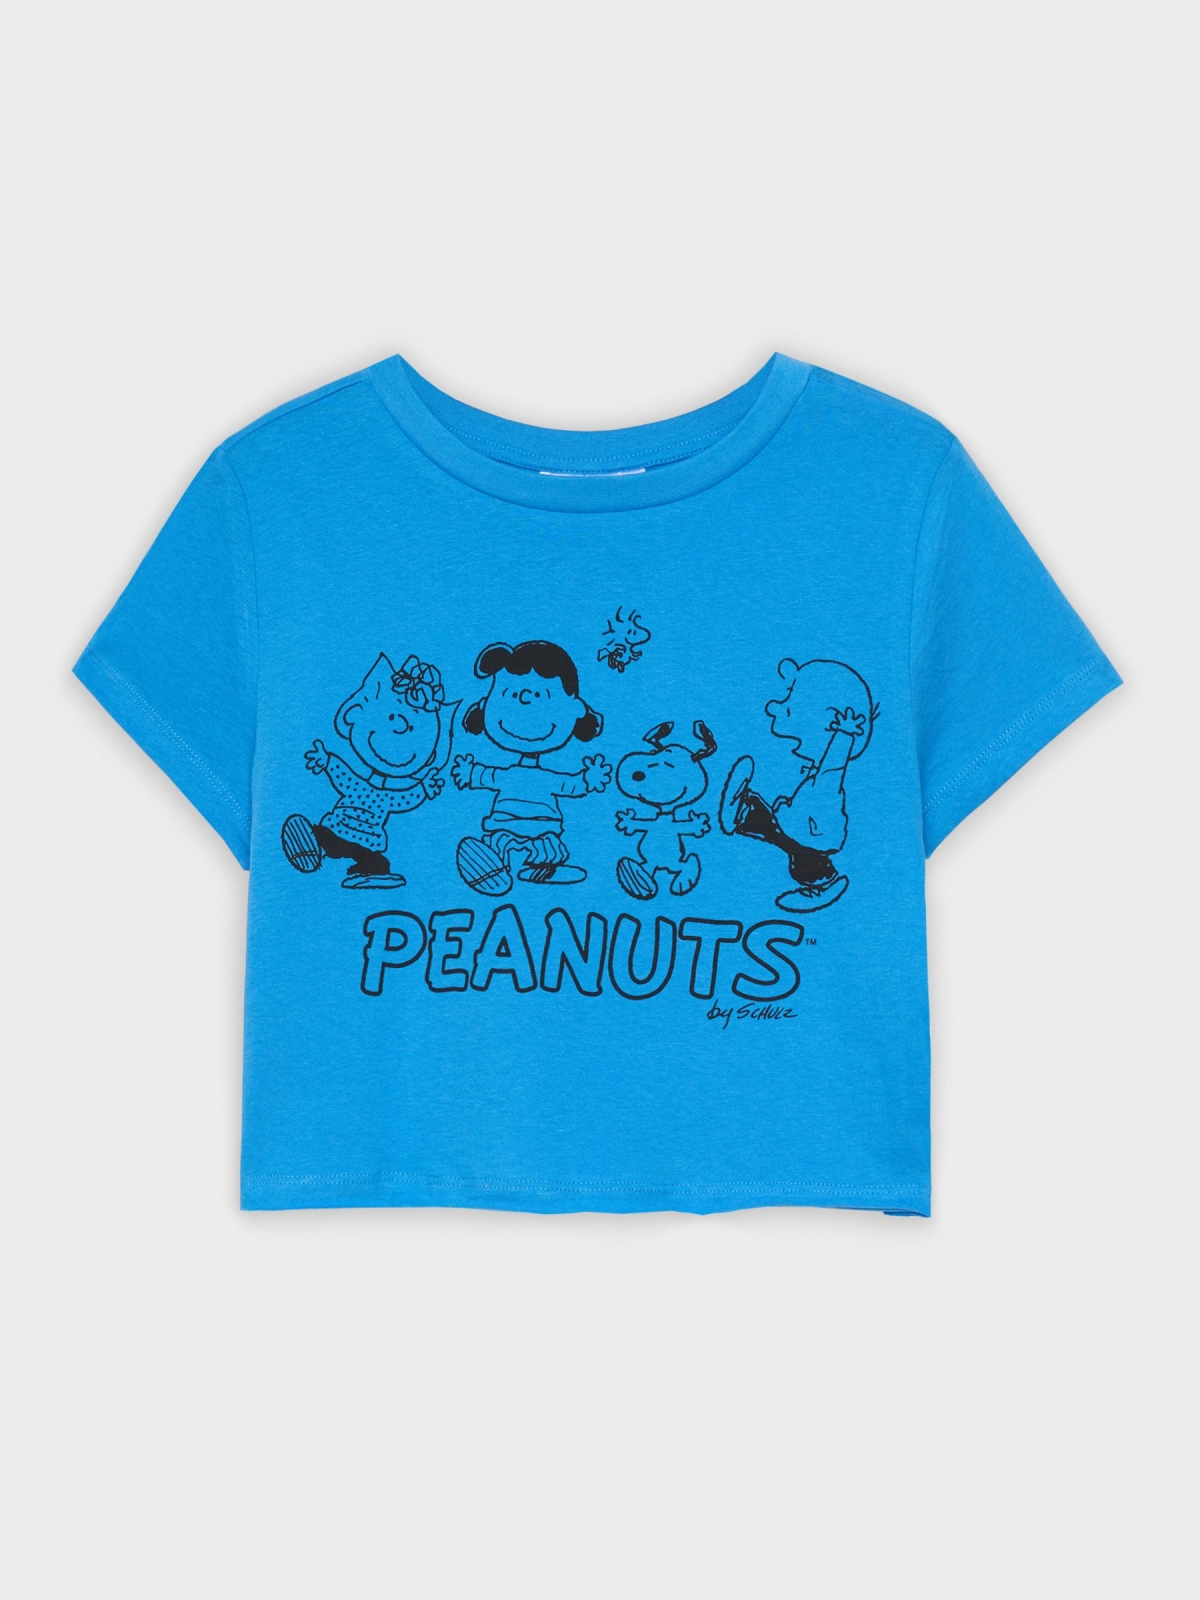  Peanuts t-shirt blue